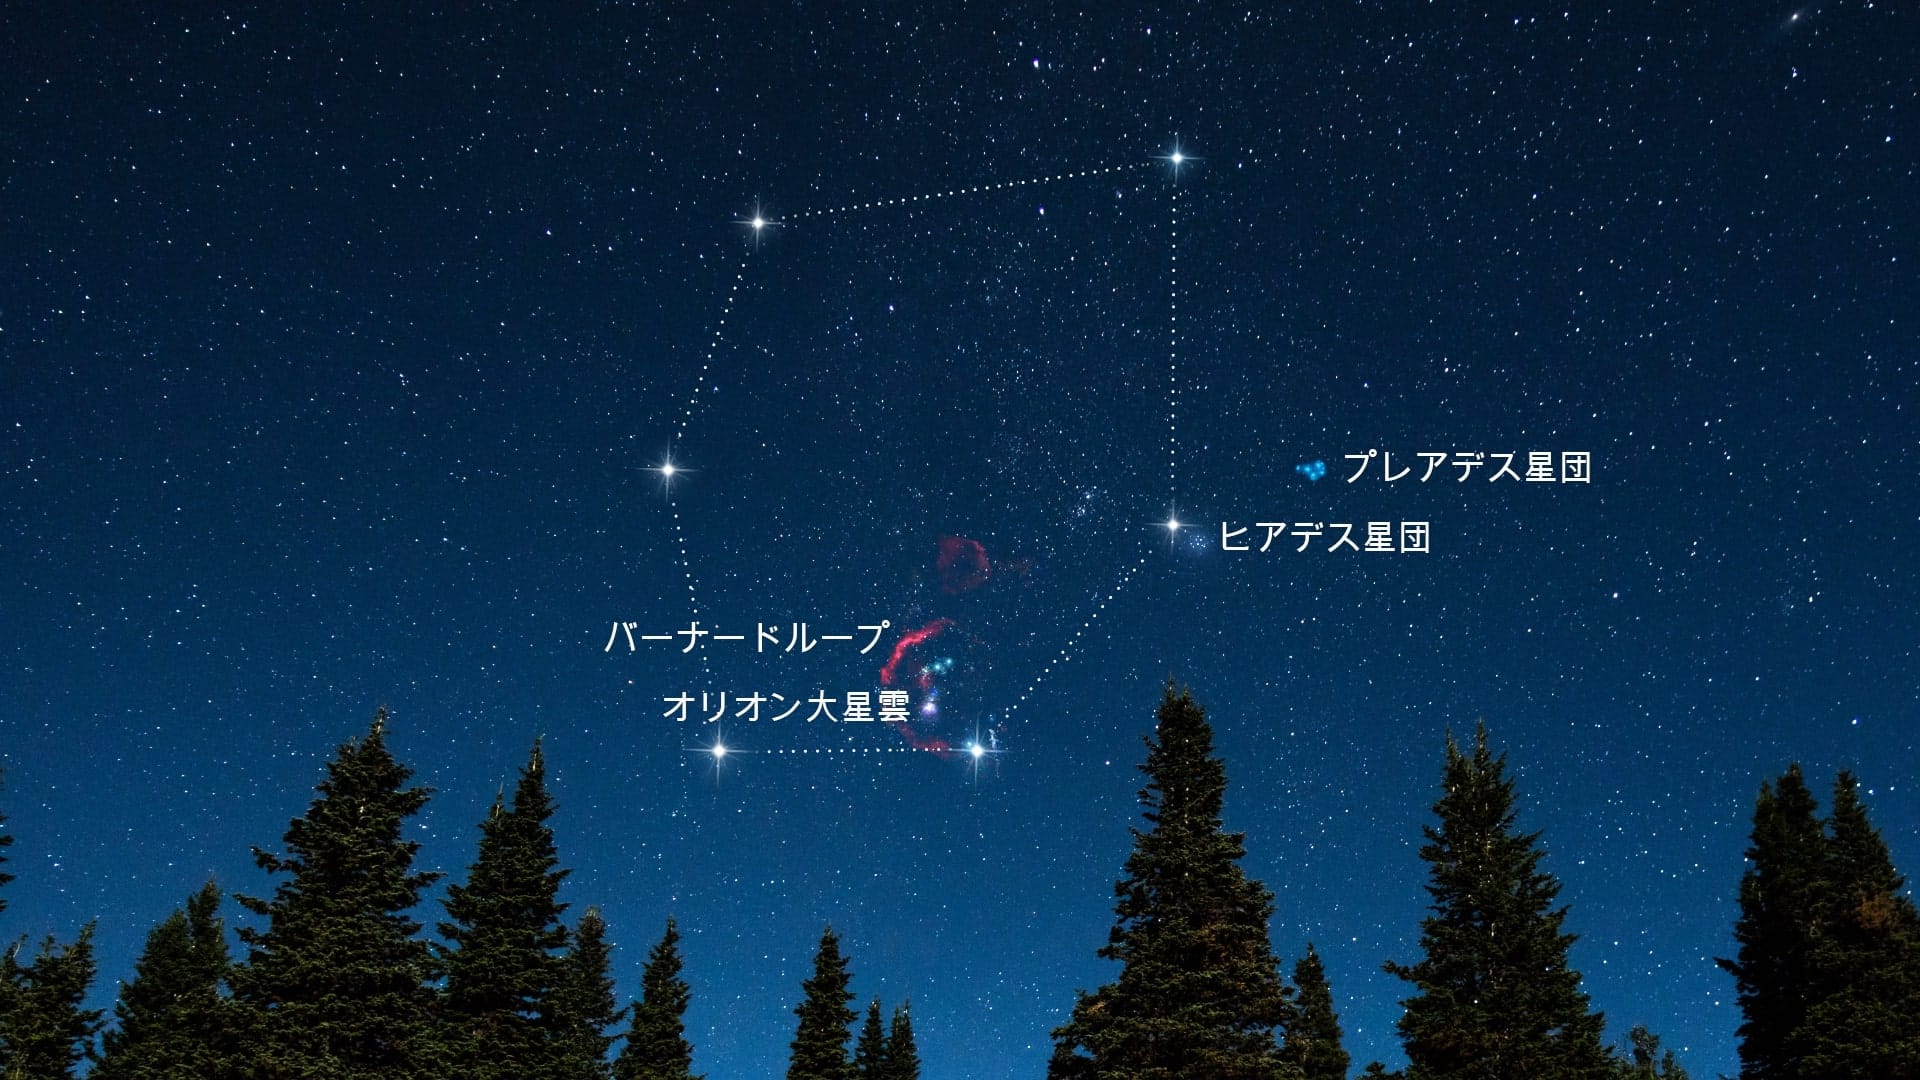 冬の六角星団と星雲